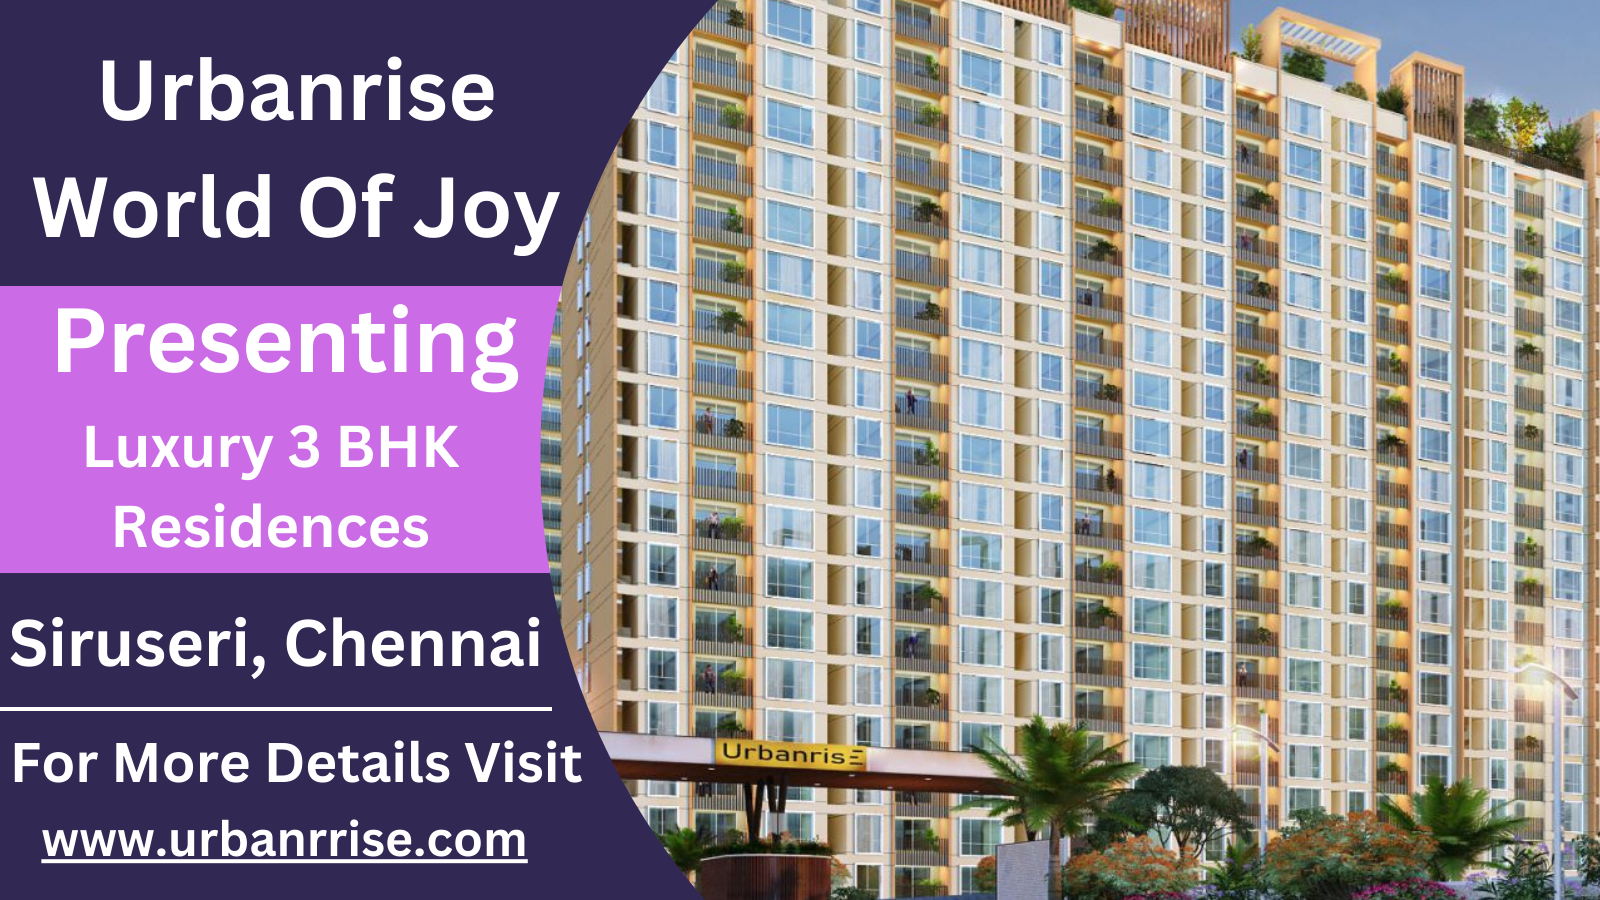 Urbanrise World of Joy - Embrace Joyful Living at Luxury 3 BHK Residences in Siruseri, Chennai